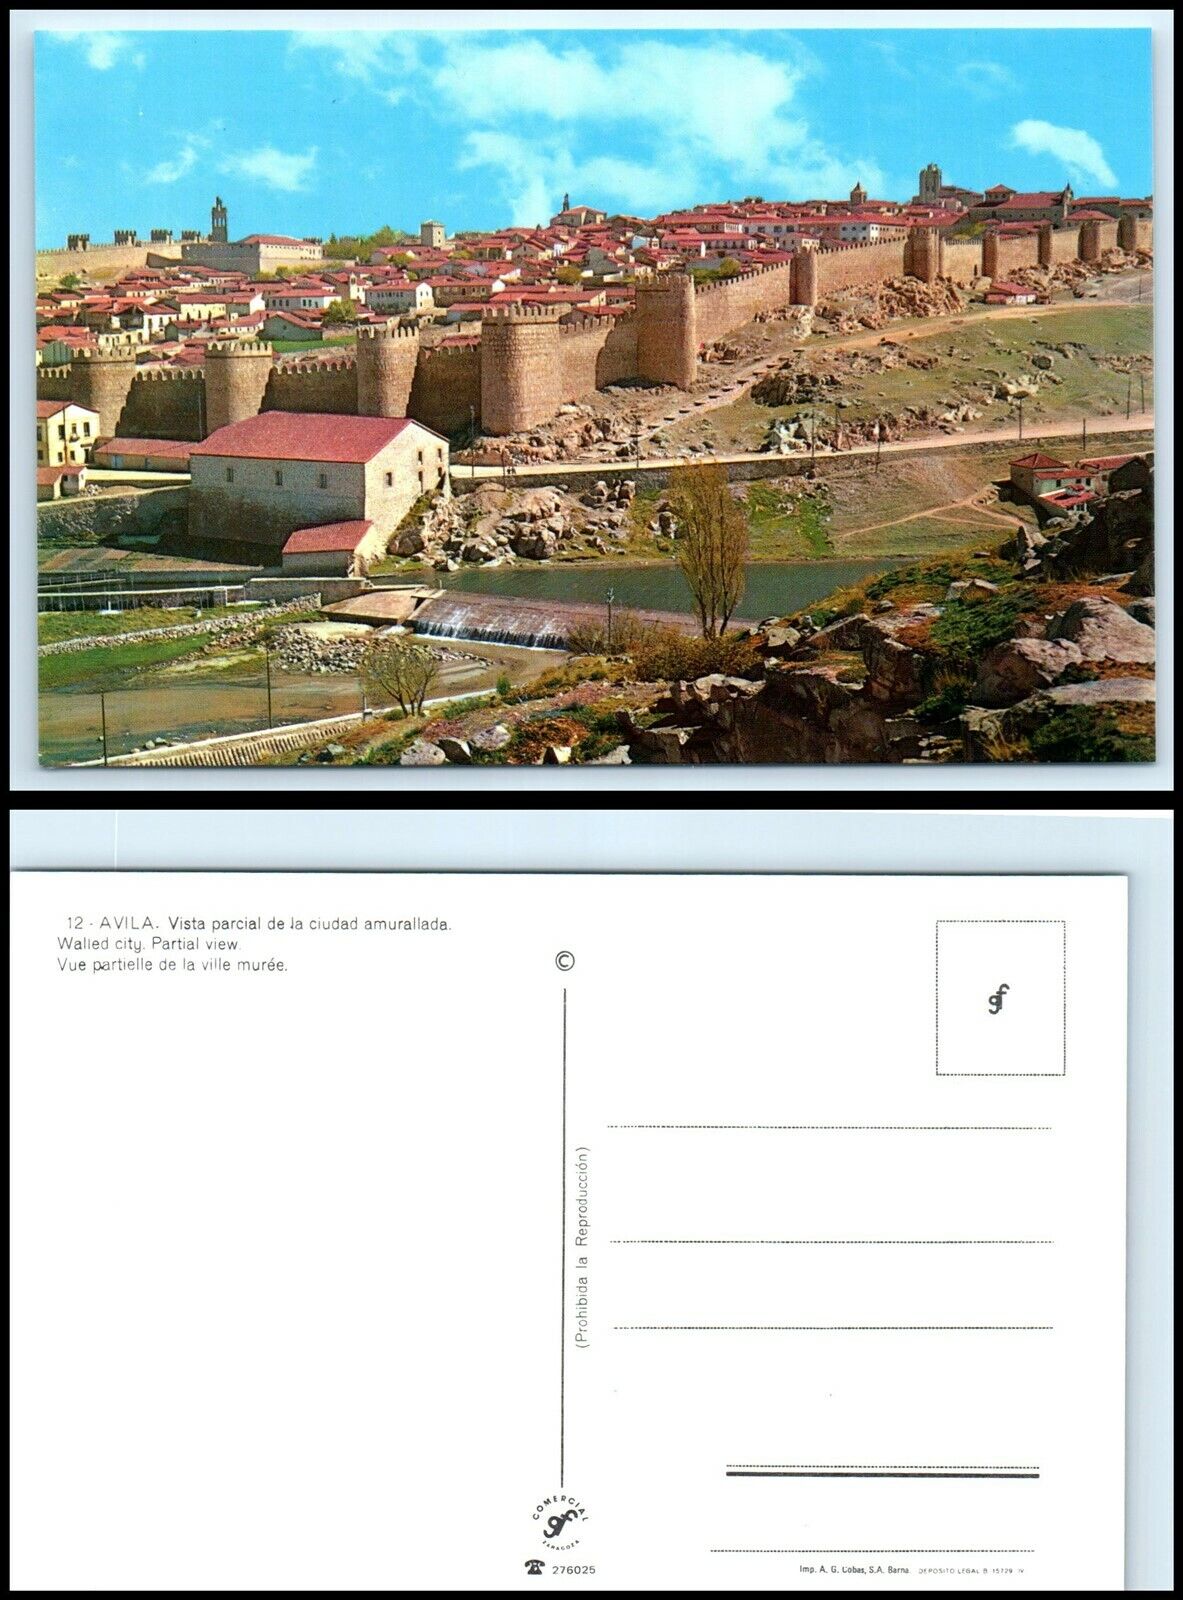 SPAIN Postcard - Avila, Walled City AV